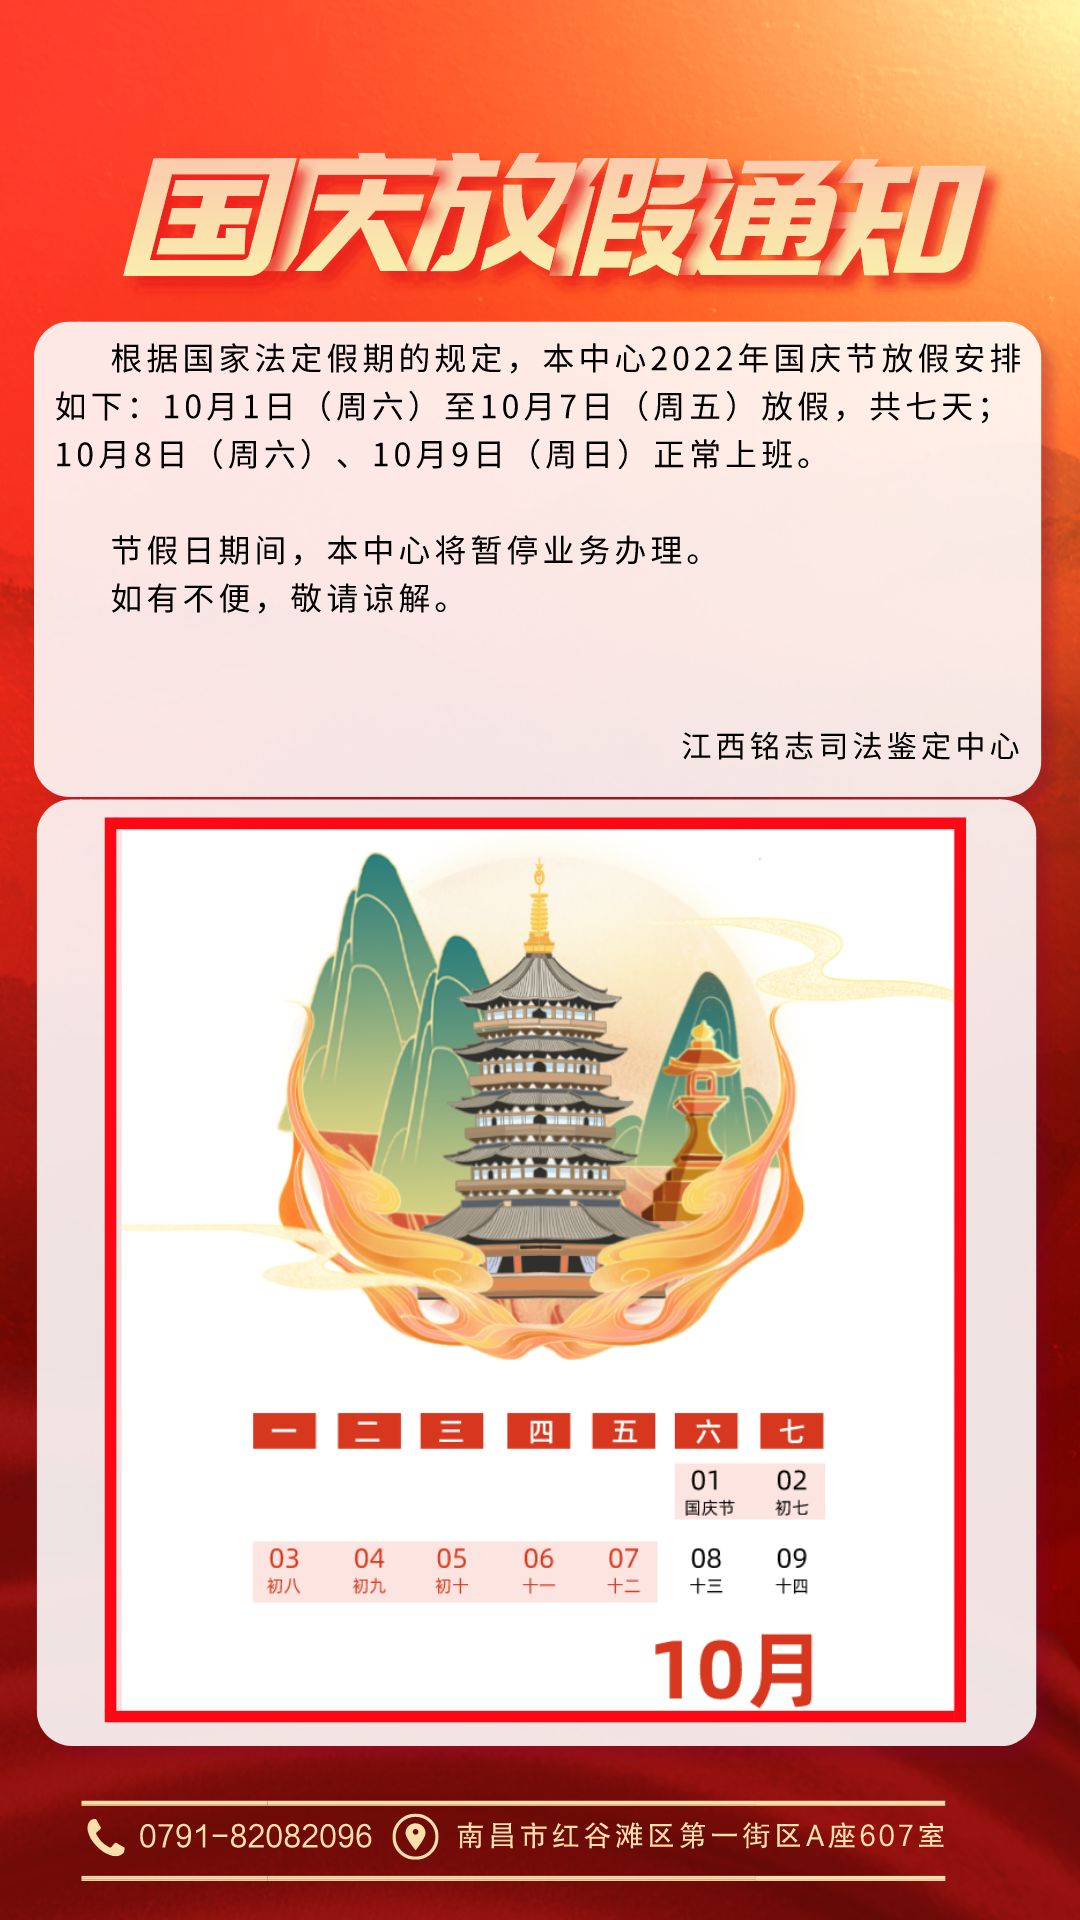 国庆节放假通知红金风手机海报__2022-09-30 14_51_59.png